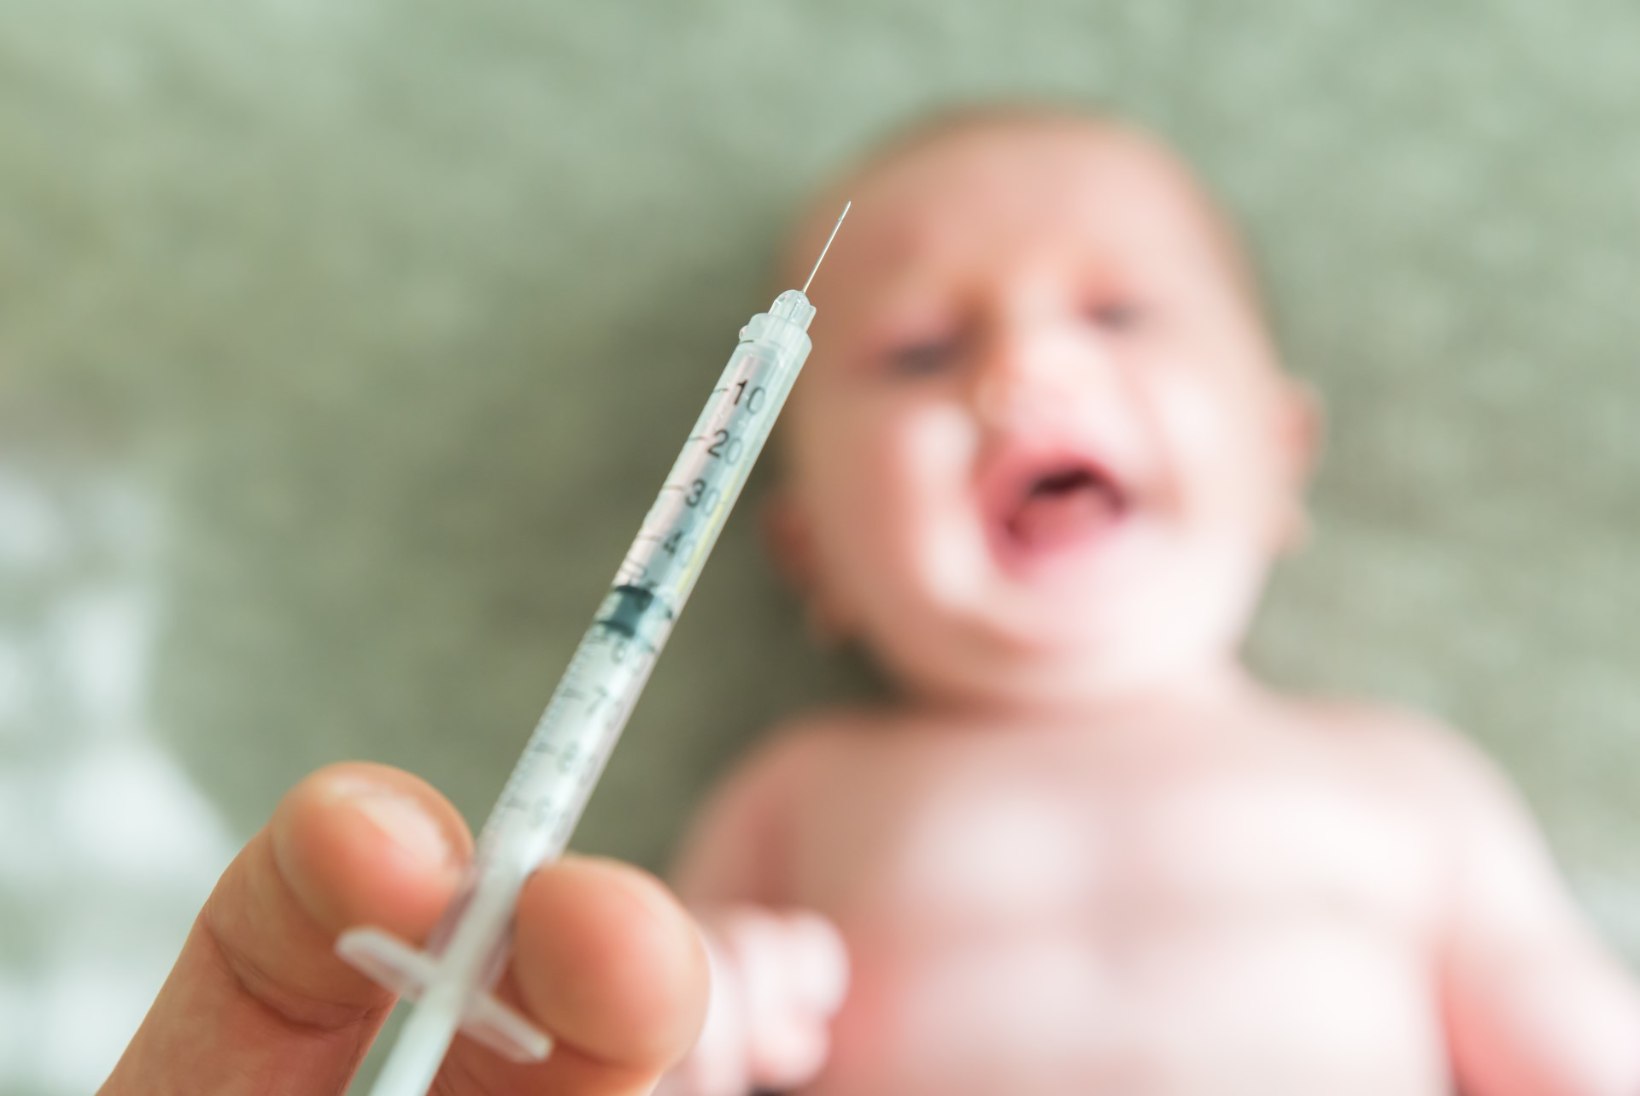 Laste vaktsineerimine ei soodusta teistesse nakkustesse haigestumist